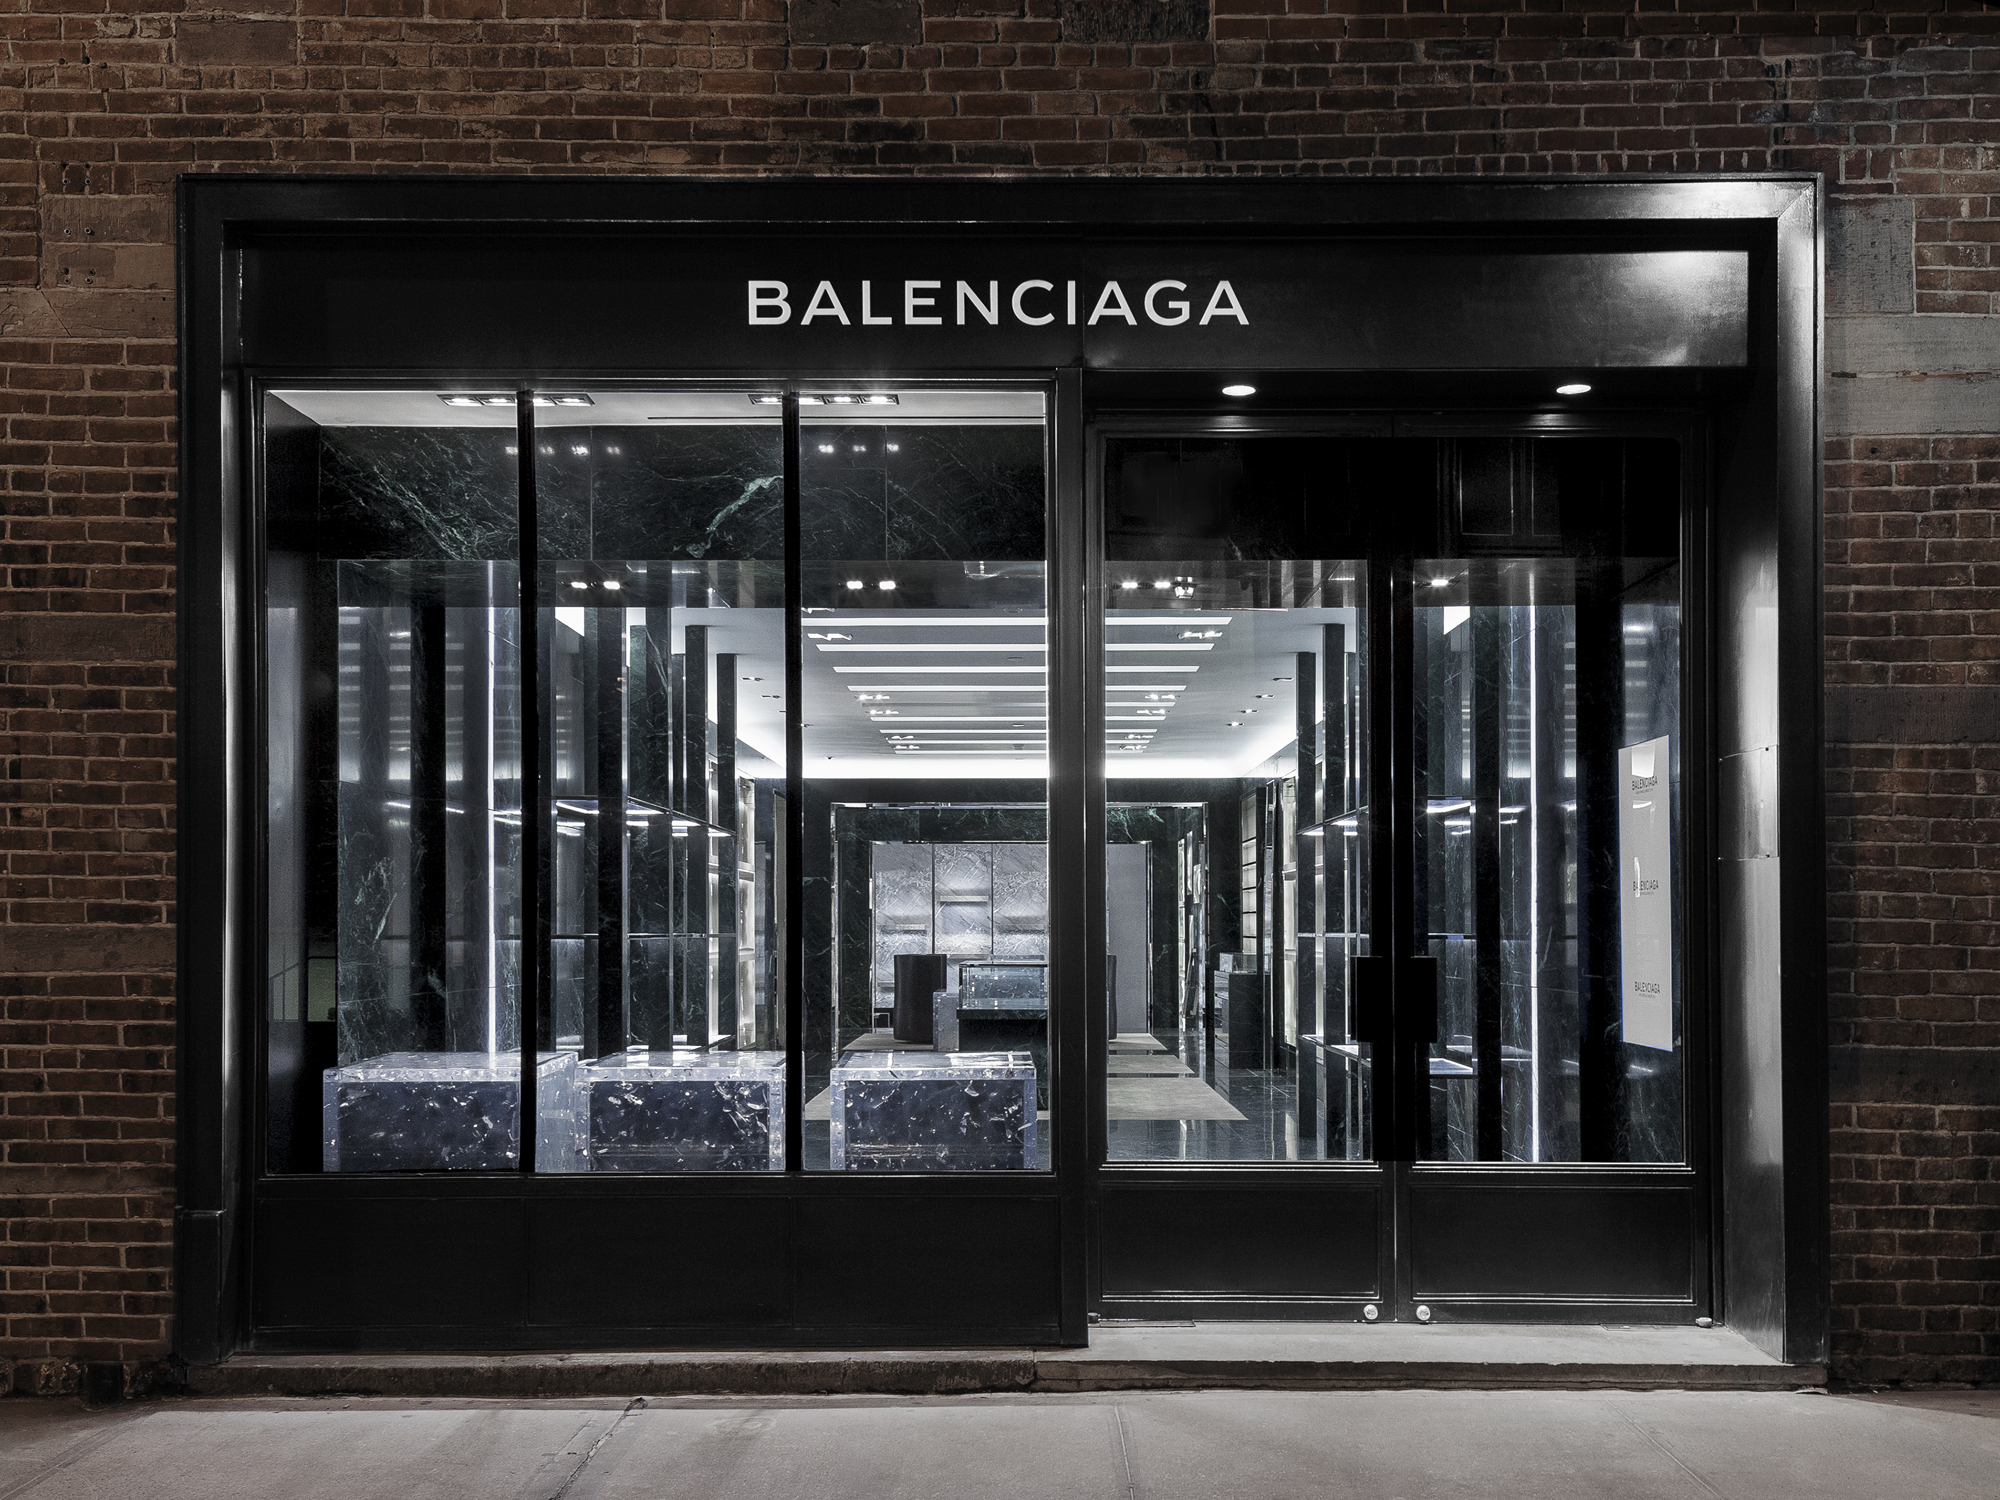 Balenciaga boutique by Alexander Wang & Ryan Korban, New York City